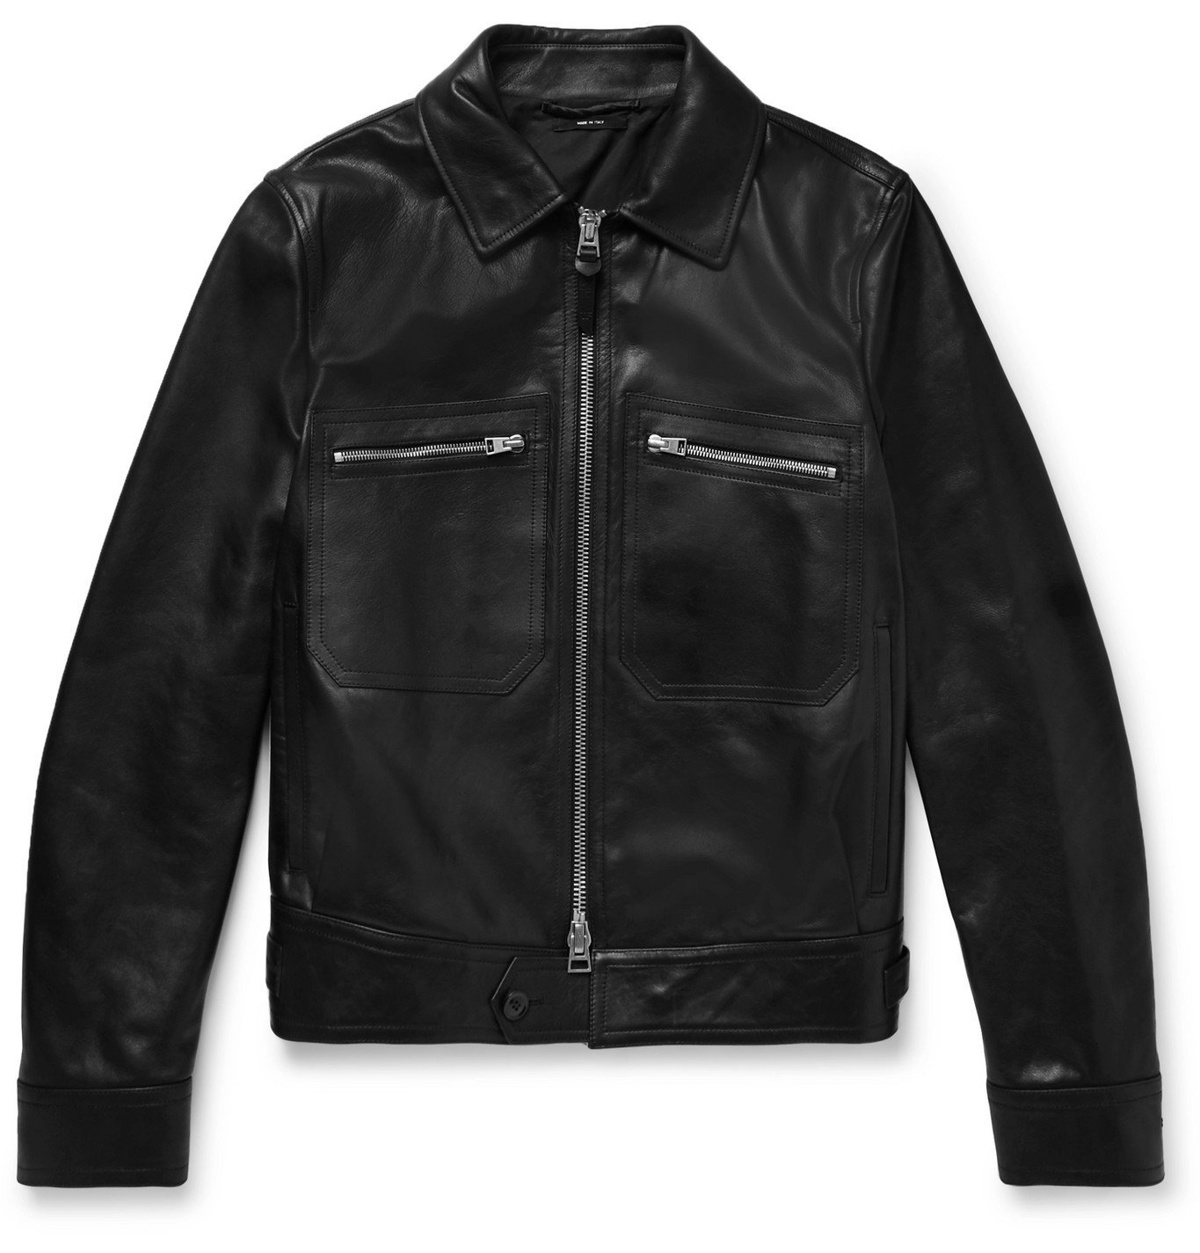 TOM FORD - Leather Jacket - Black TOM FORD